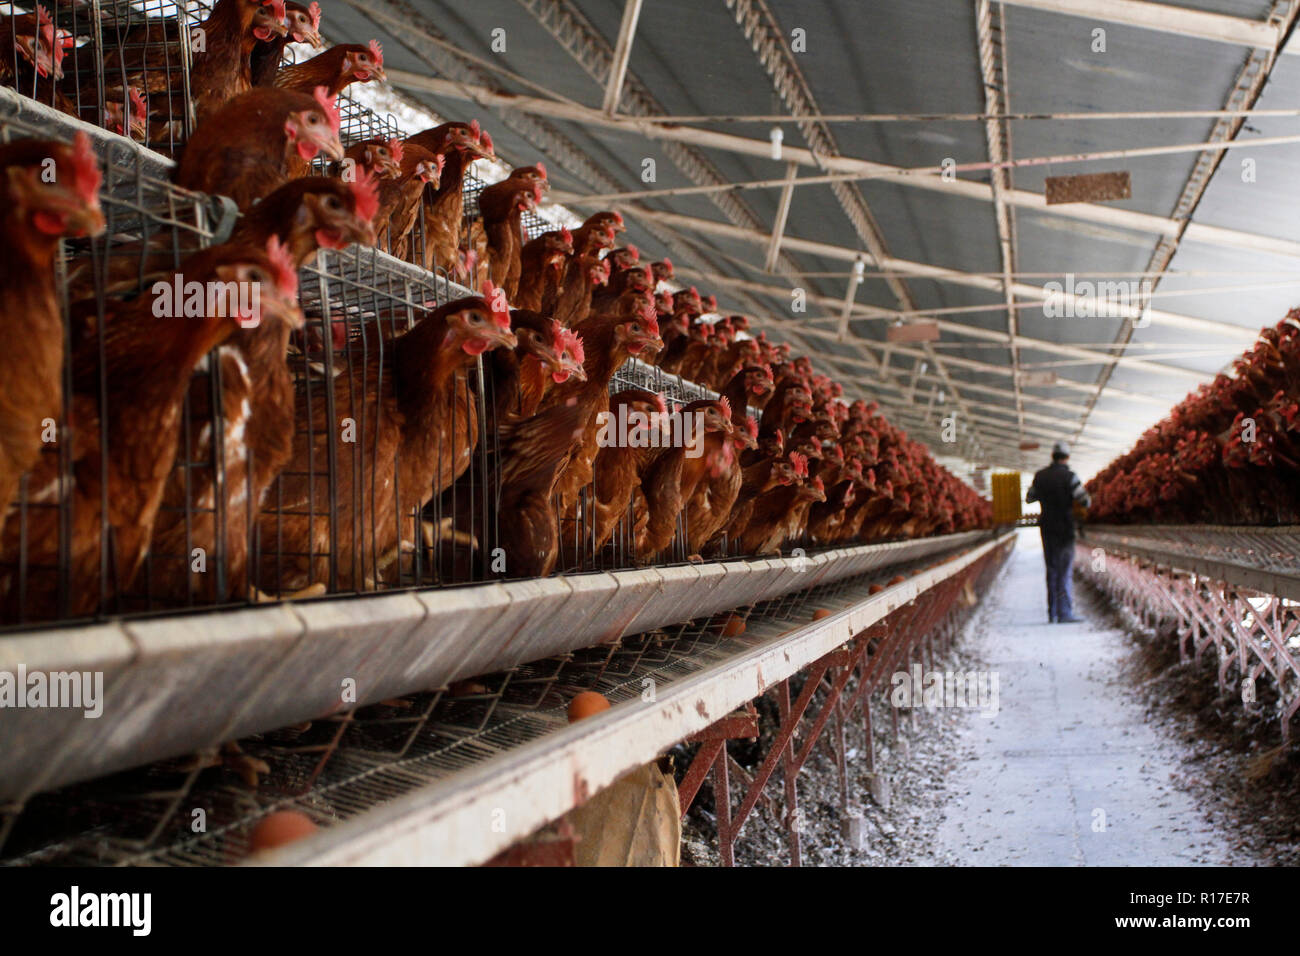 MENDOZA, ARGENTINA, 13 de agosto de 2014. Criadero de pollo, aves dedicadas a la producción de huevos, Luzuriaga de Maipú, de la ciudad de Mendoza. Foto: Axel llore Foto de stock